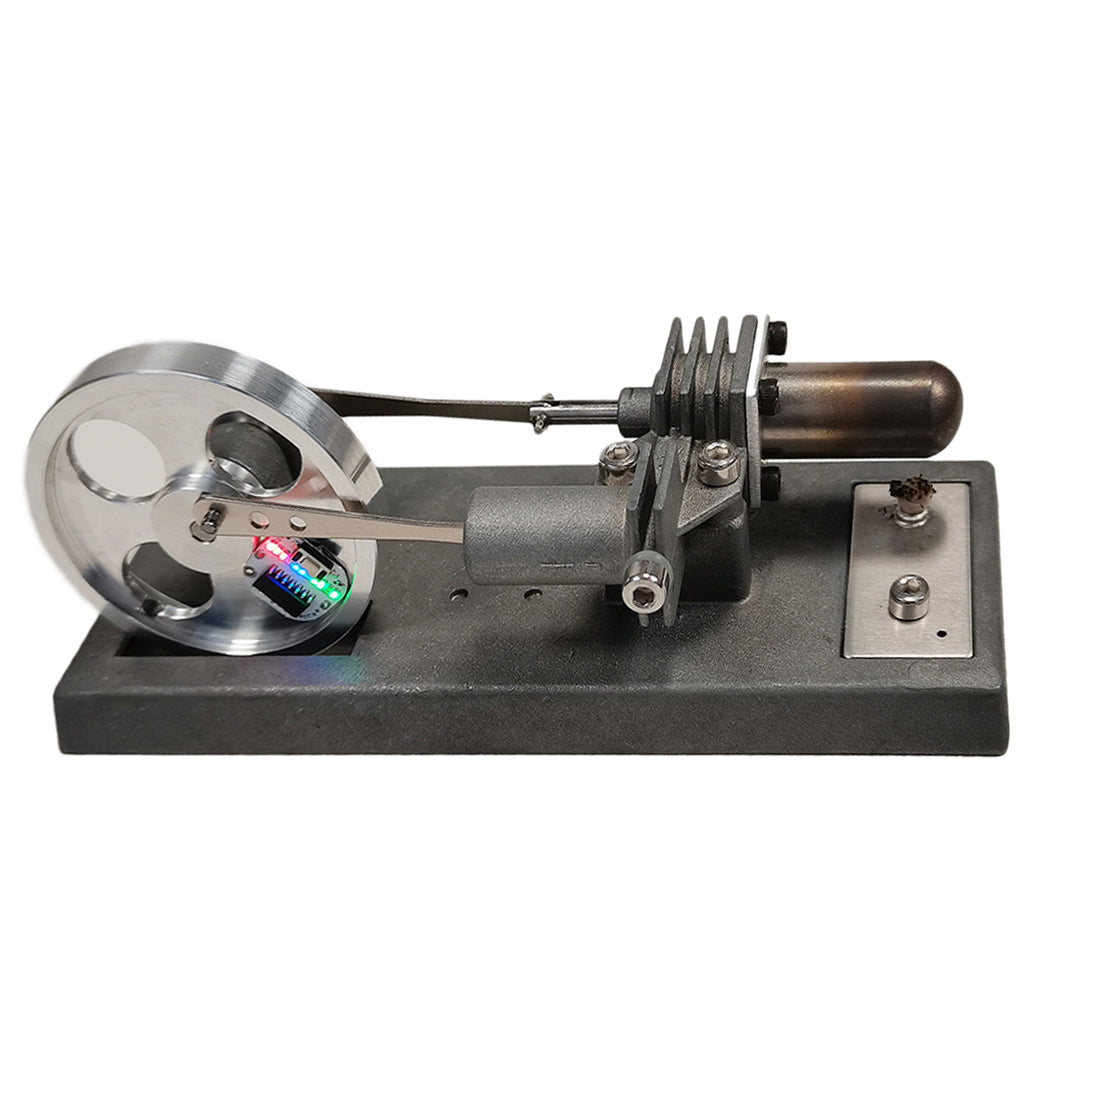 γ-Type Vintage DIY Stirling Engine Model Kit with Luminous Flywheel Science Experiment Educational Toy - Enginediy Customized - enginediy